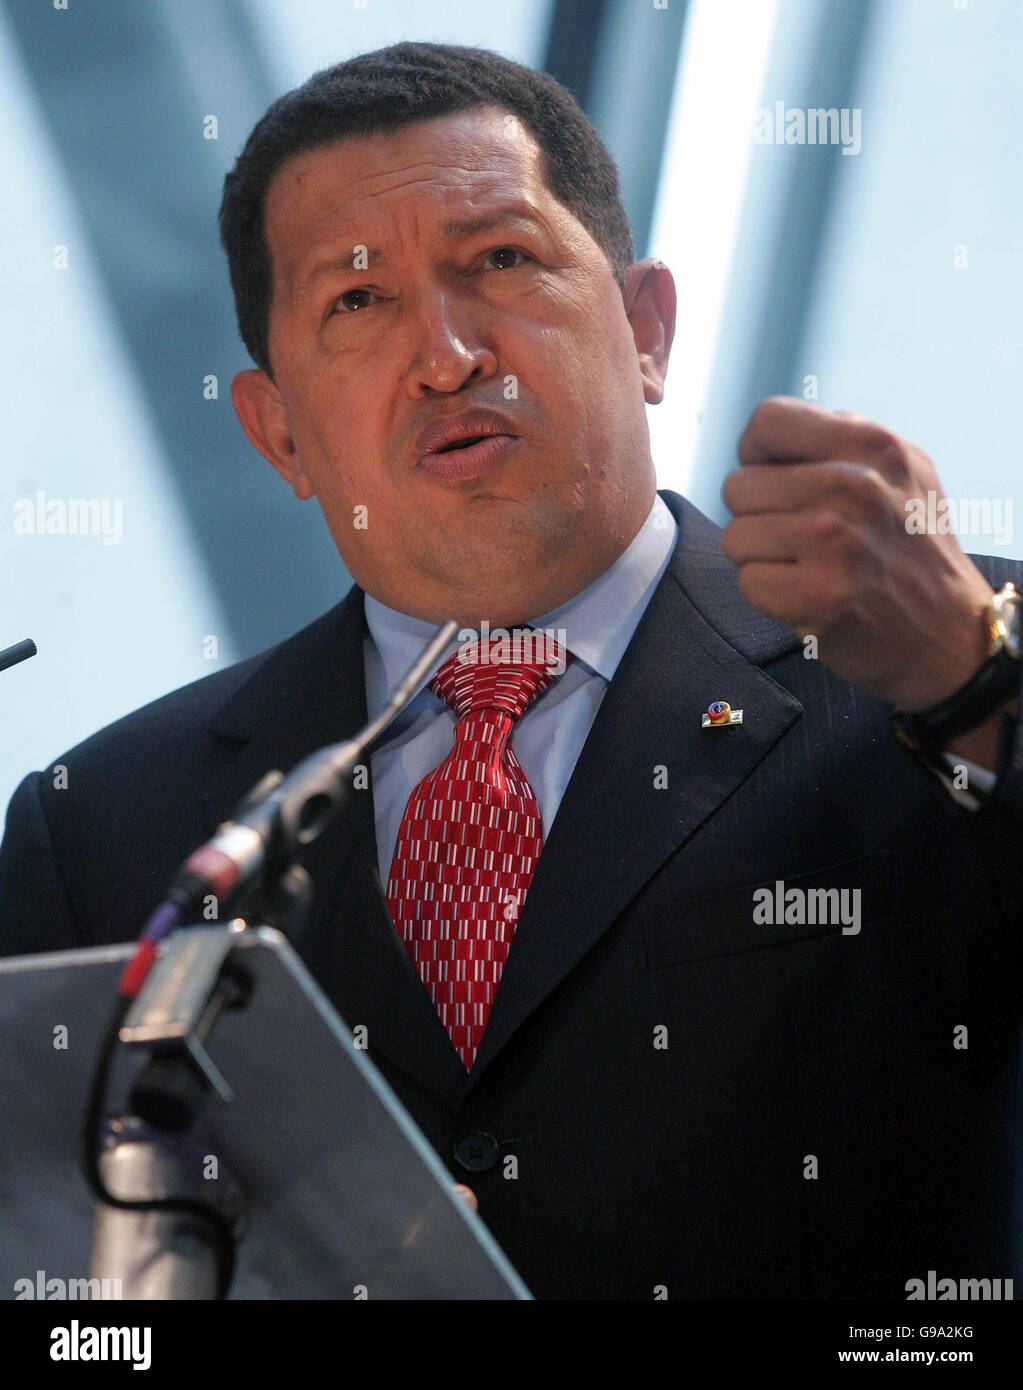 Der Präsident Venezuelas, Hugo Chavez, spricht während einer Pressekonferenz im GLA-Gebäude in London. Stockfoto